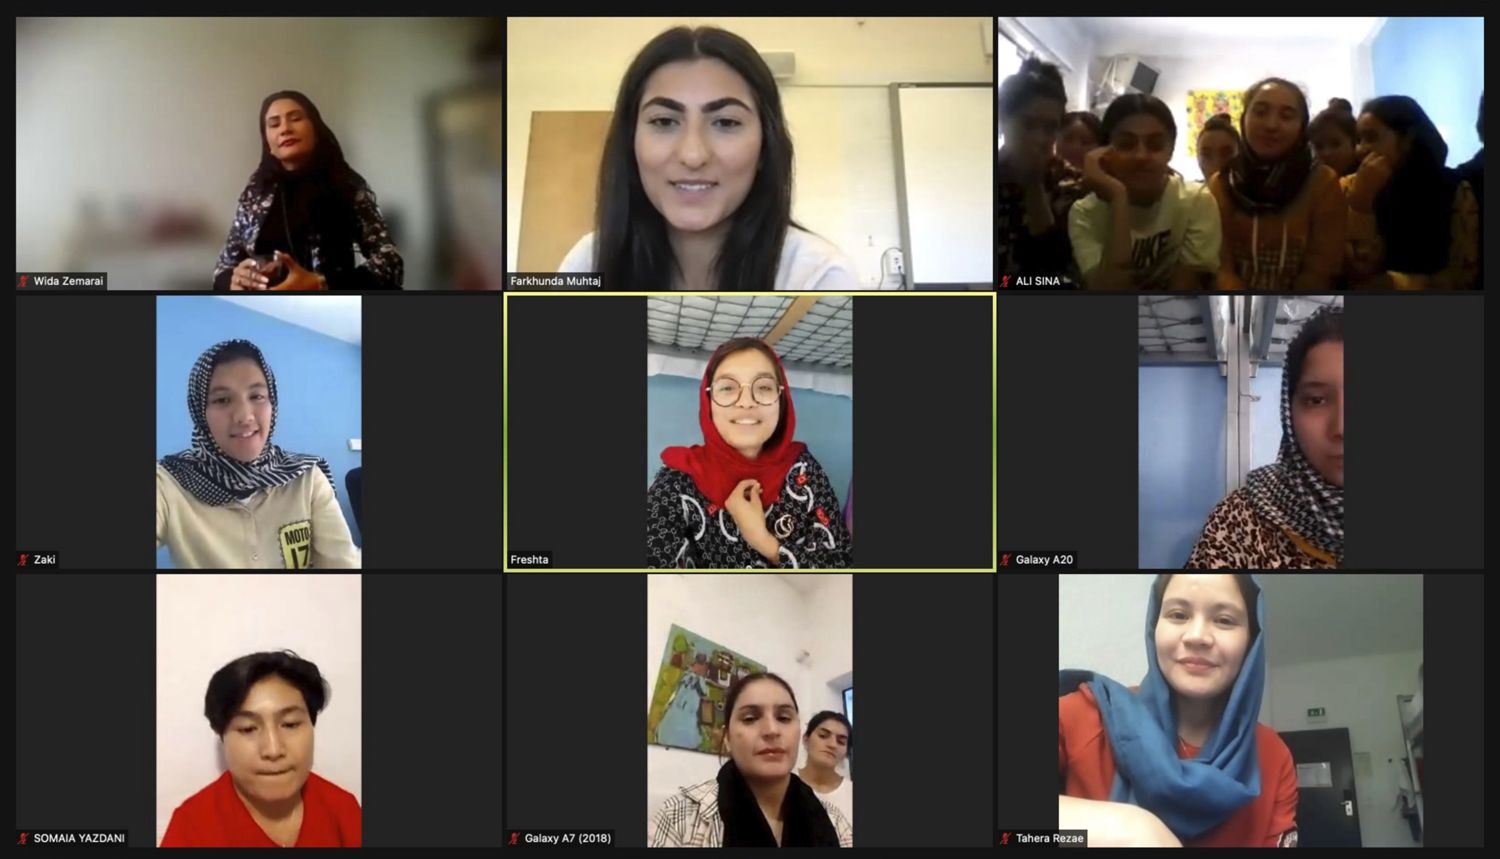 Reszta Afghan Girls Soccer Team pomyślnie uratowana, otrzymała azyl w Portugalii